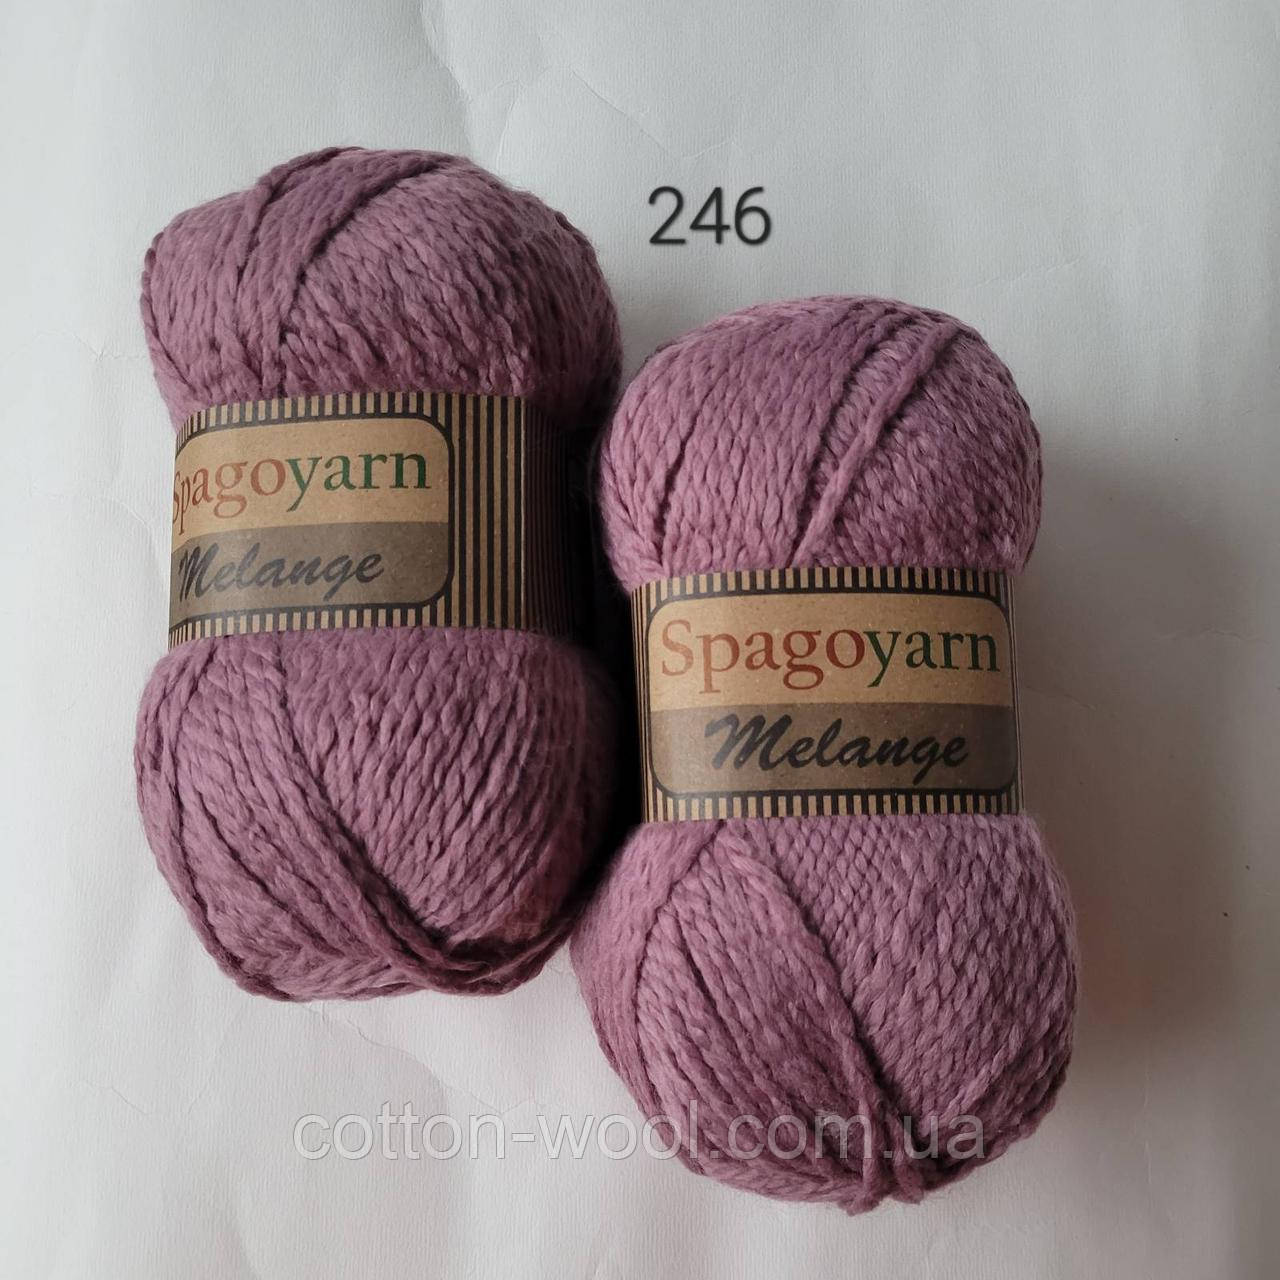 Spagoyarn  Melange Wool 246 20% шерсть 80%акрил